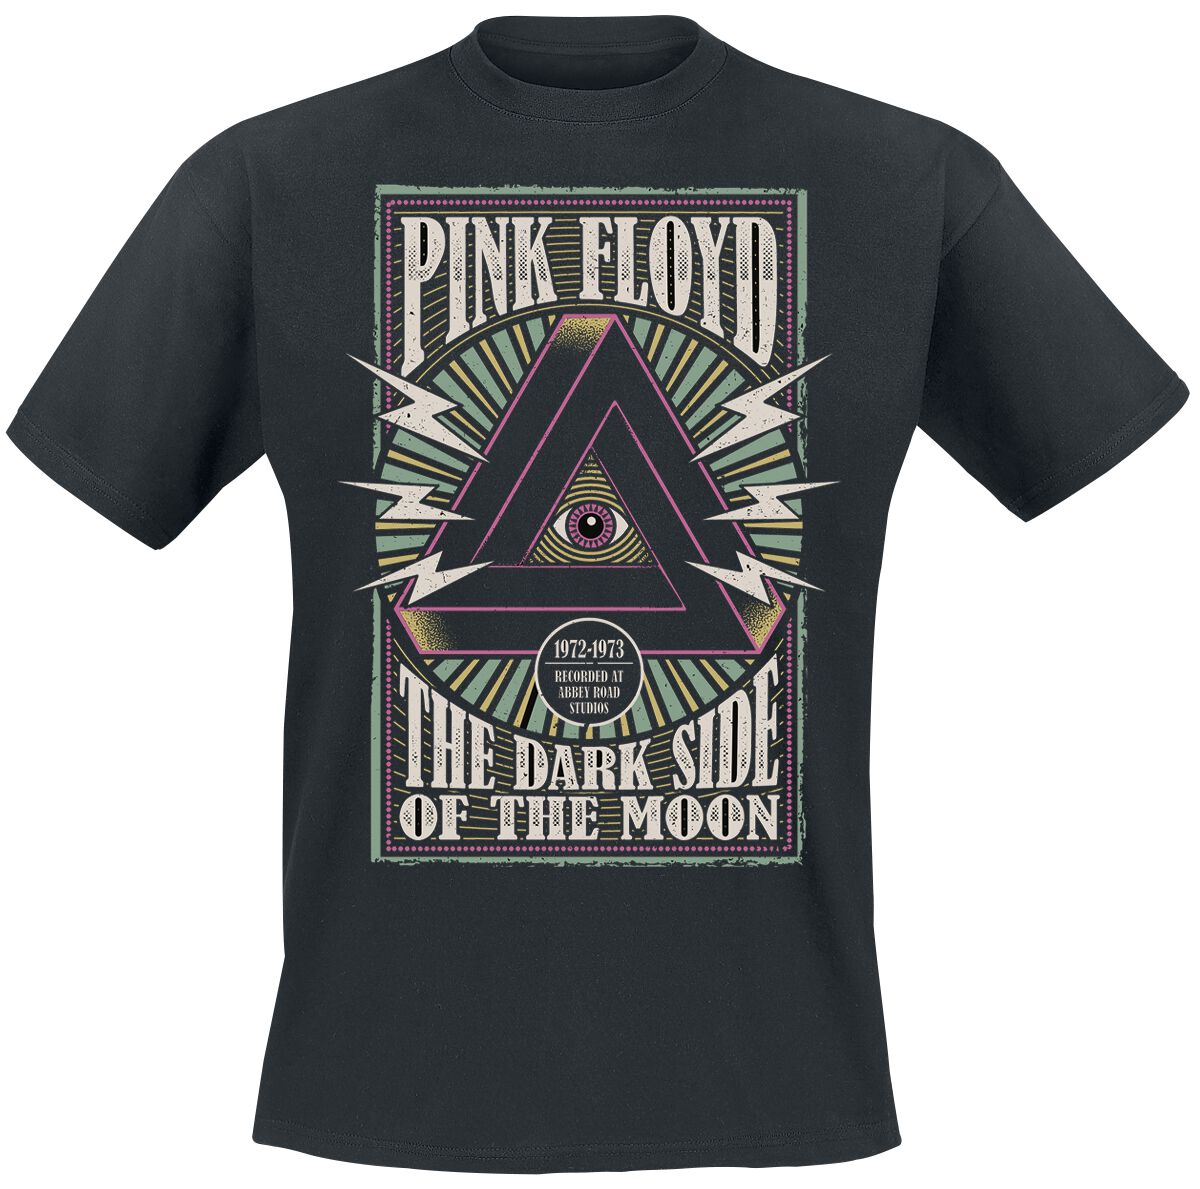 Pink Floyd T-Shirt - Arrow Eye - S bis 3XL - für Männer - Größe 3XL - schwarz  - Lizenziertes Merchandise!